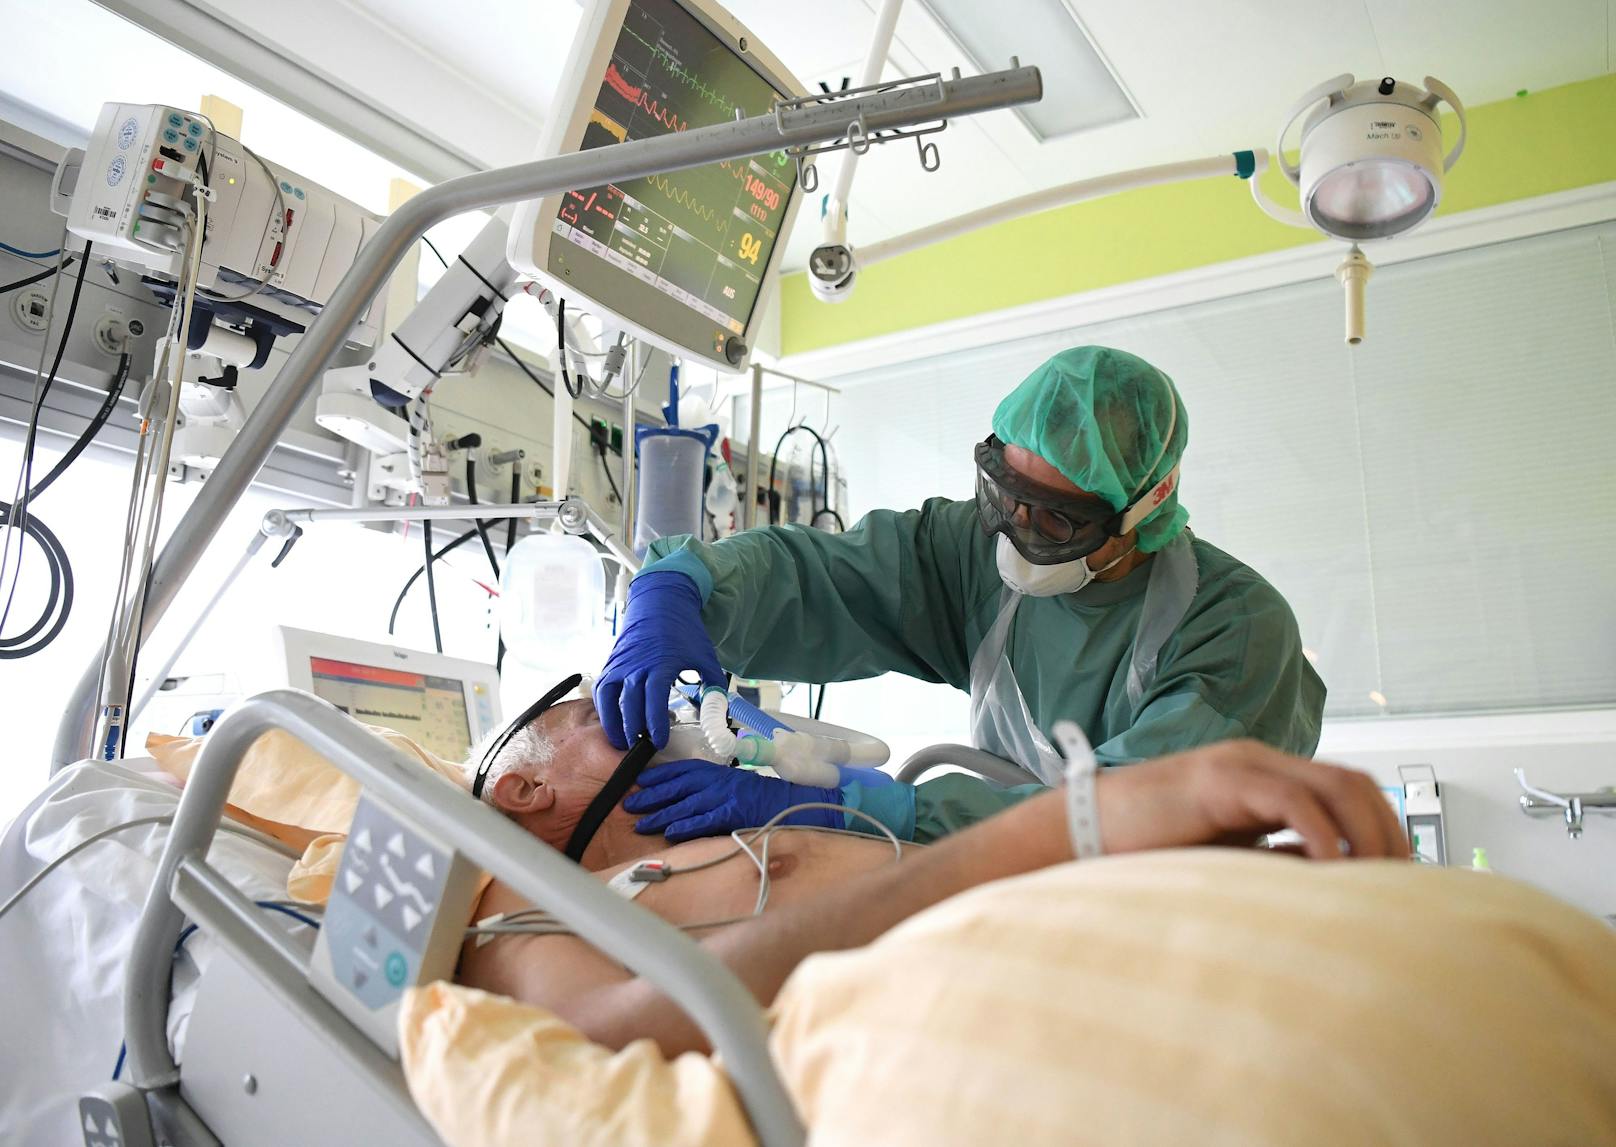 Zur Spitzenzeit im April mussten in Österreich 600 Covid-Patienten intensivmedizinisch betreut werden. (Archivbild, November 2020)